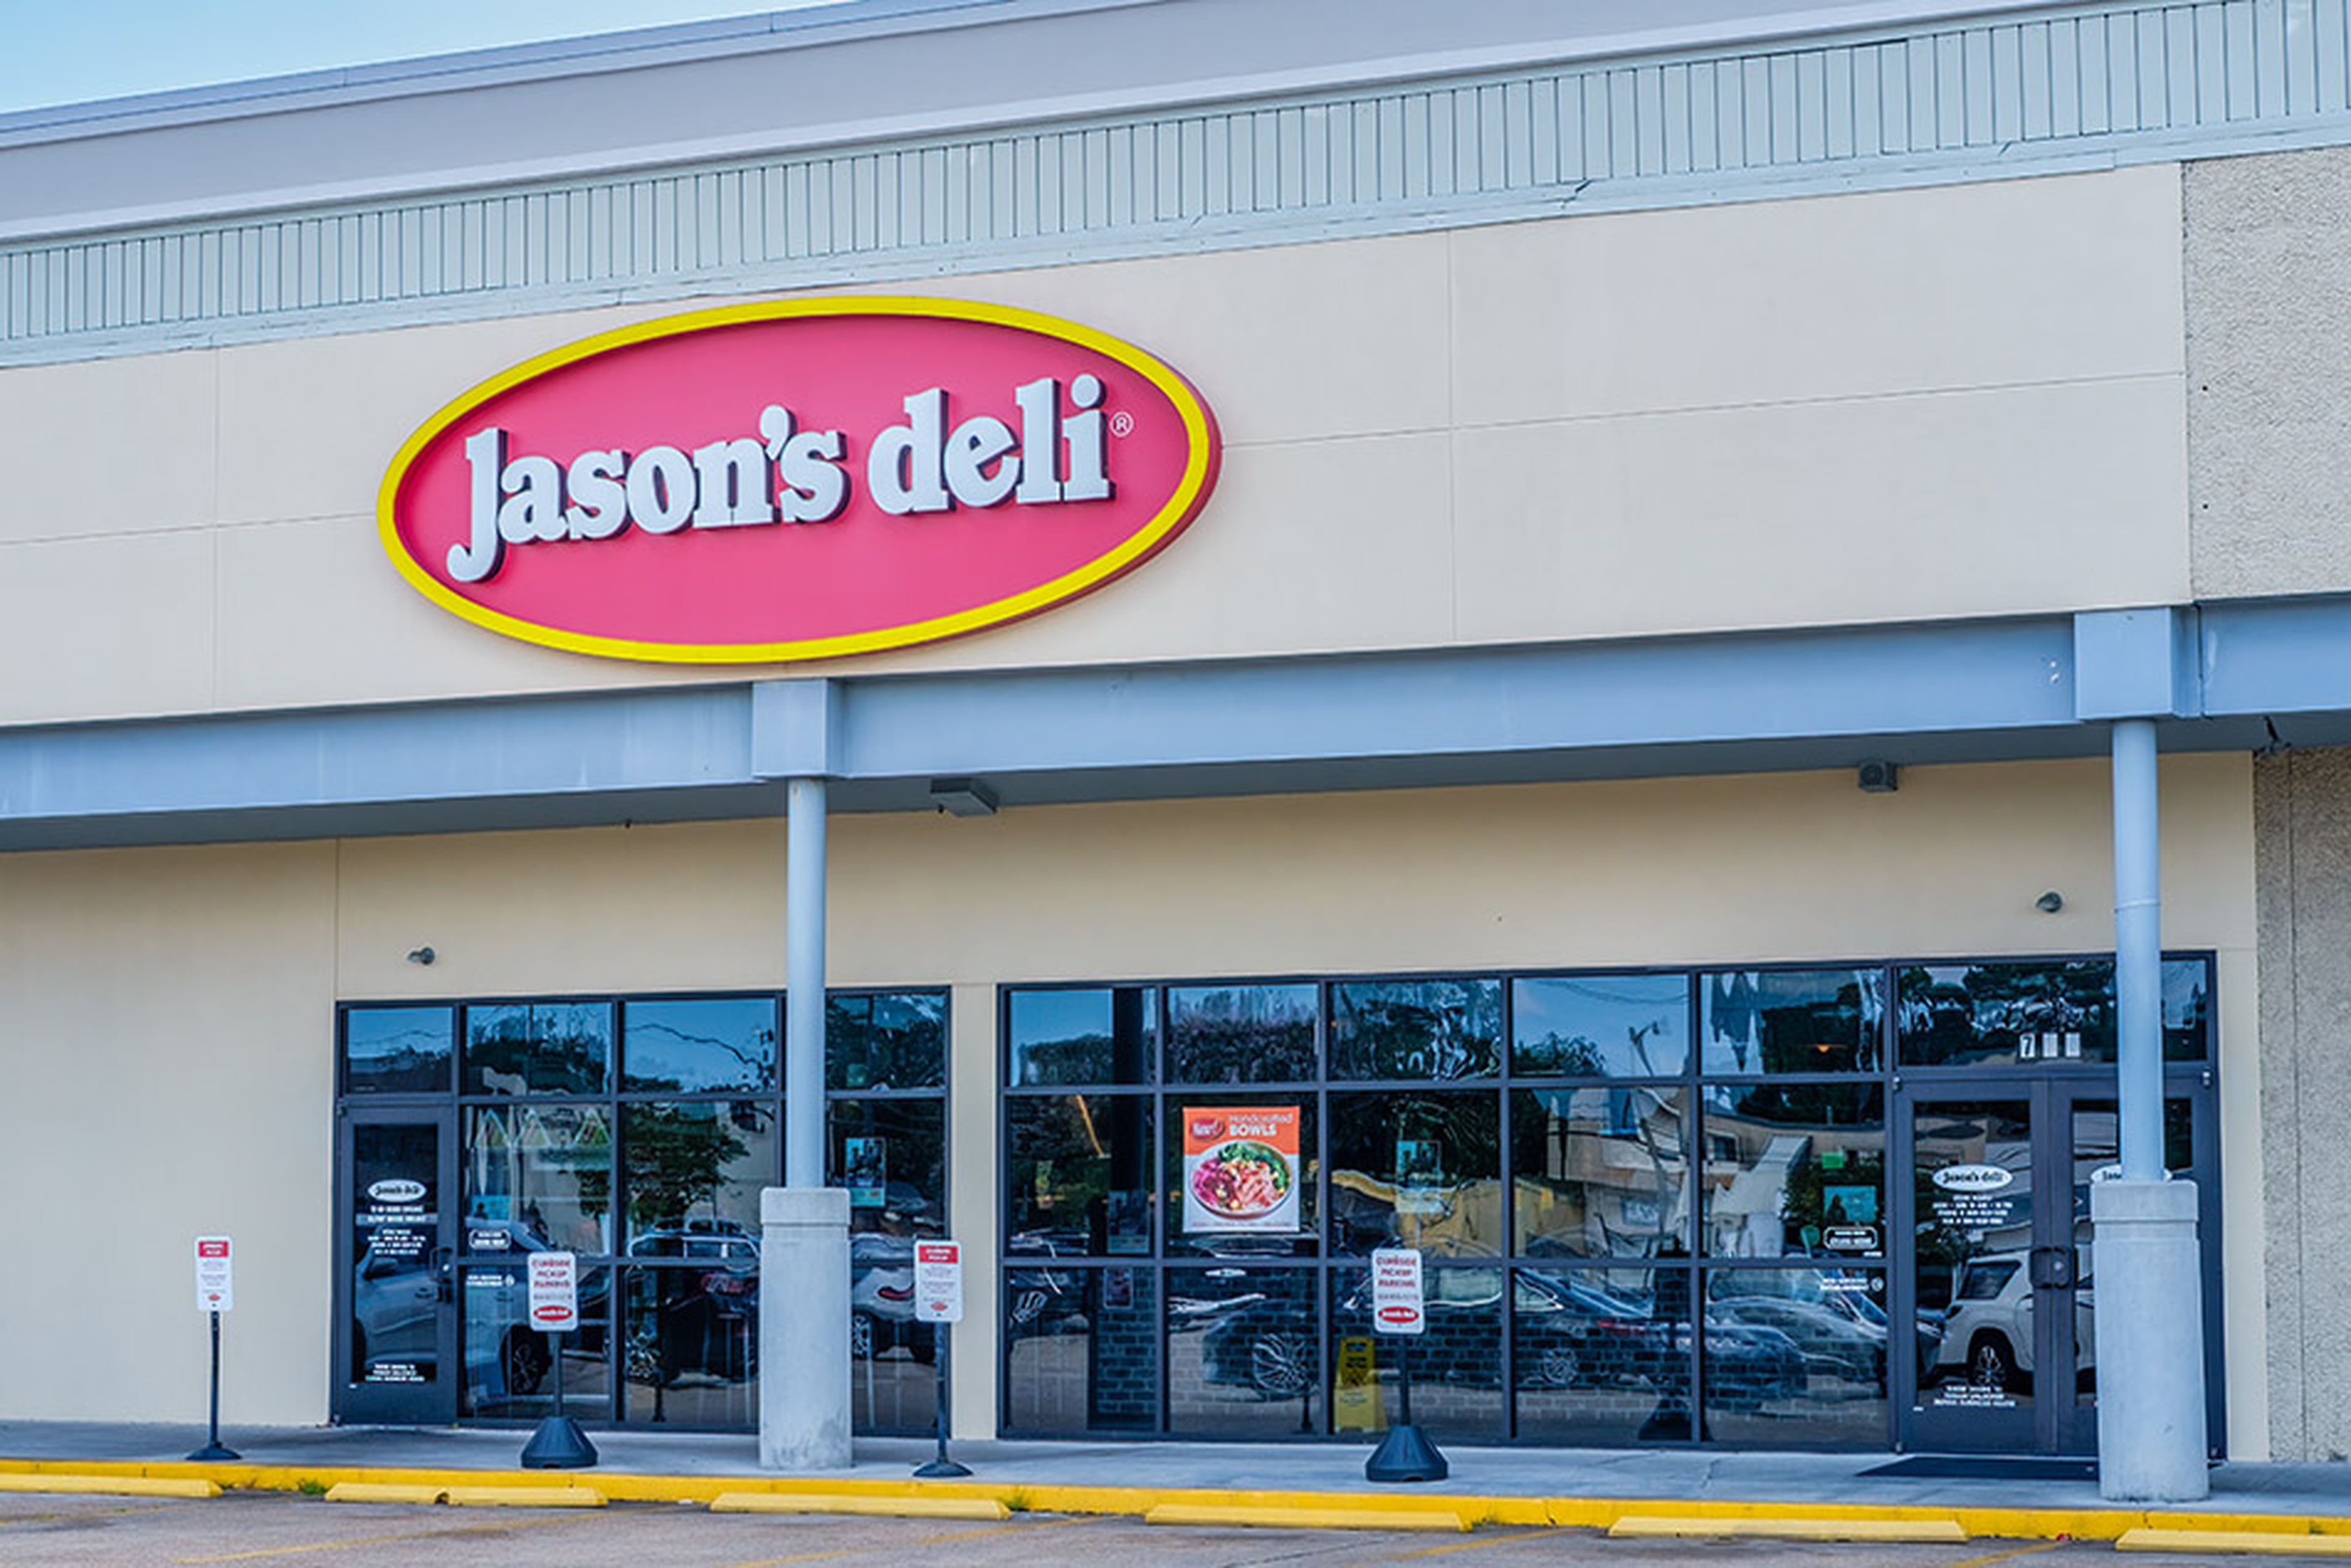 Jason's Deli, a national chain restaurant